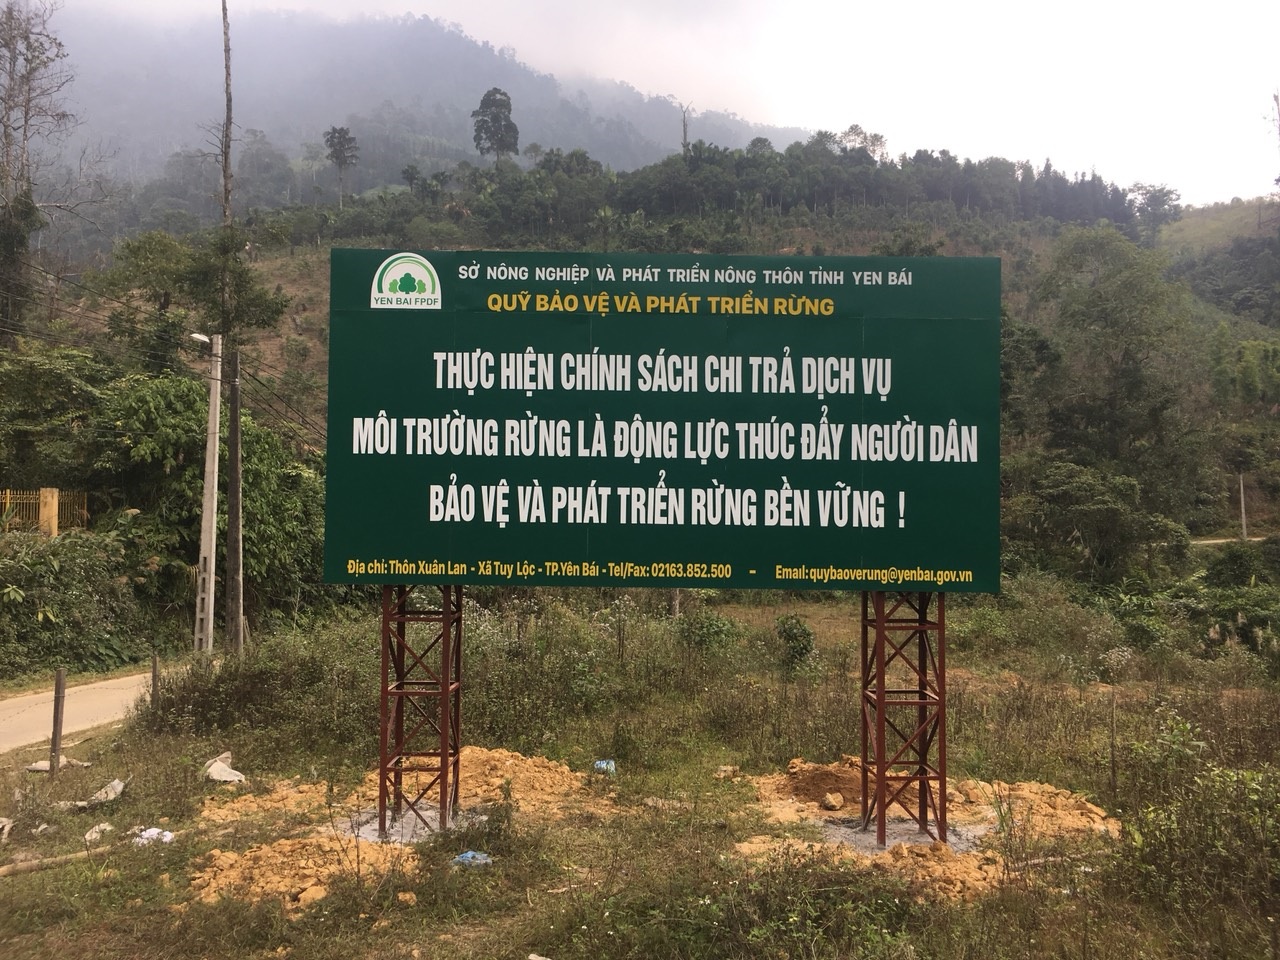 Quỹ Bảo vệ và Phát triển rừng tỉnh Yên Bái xây dựng công trình, phần việc hưởng ứng kỷ niệm ngành Lâm nghiệp Việt Nam 75 năm hình thành và Phát triển